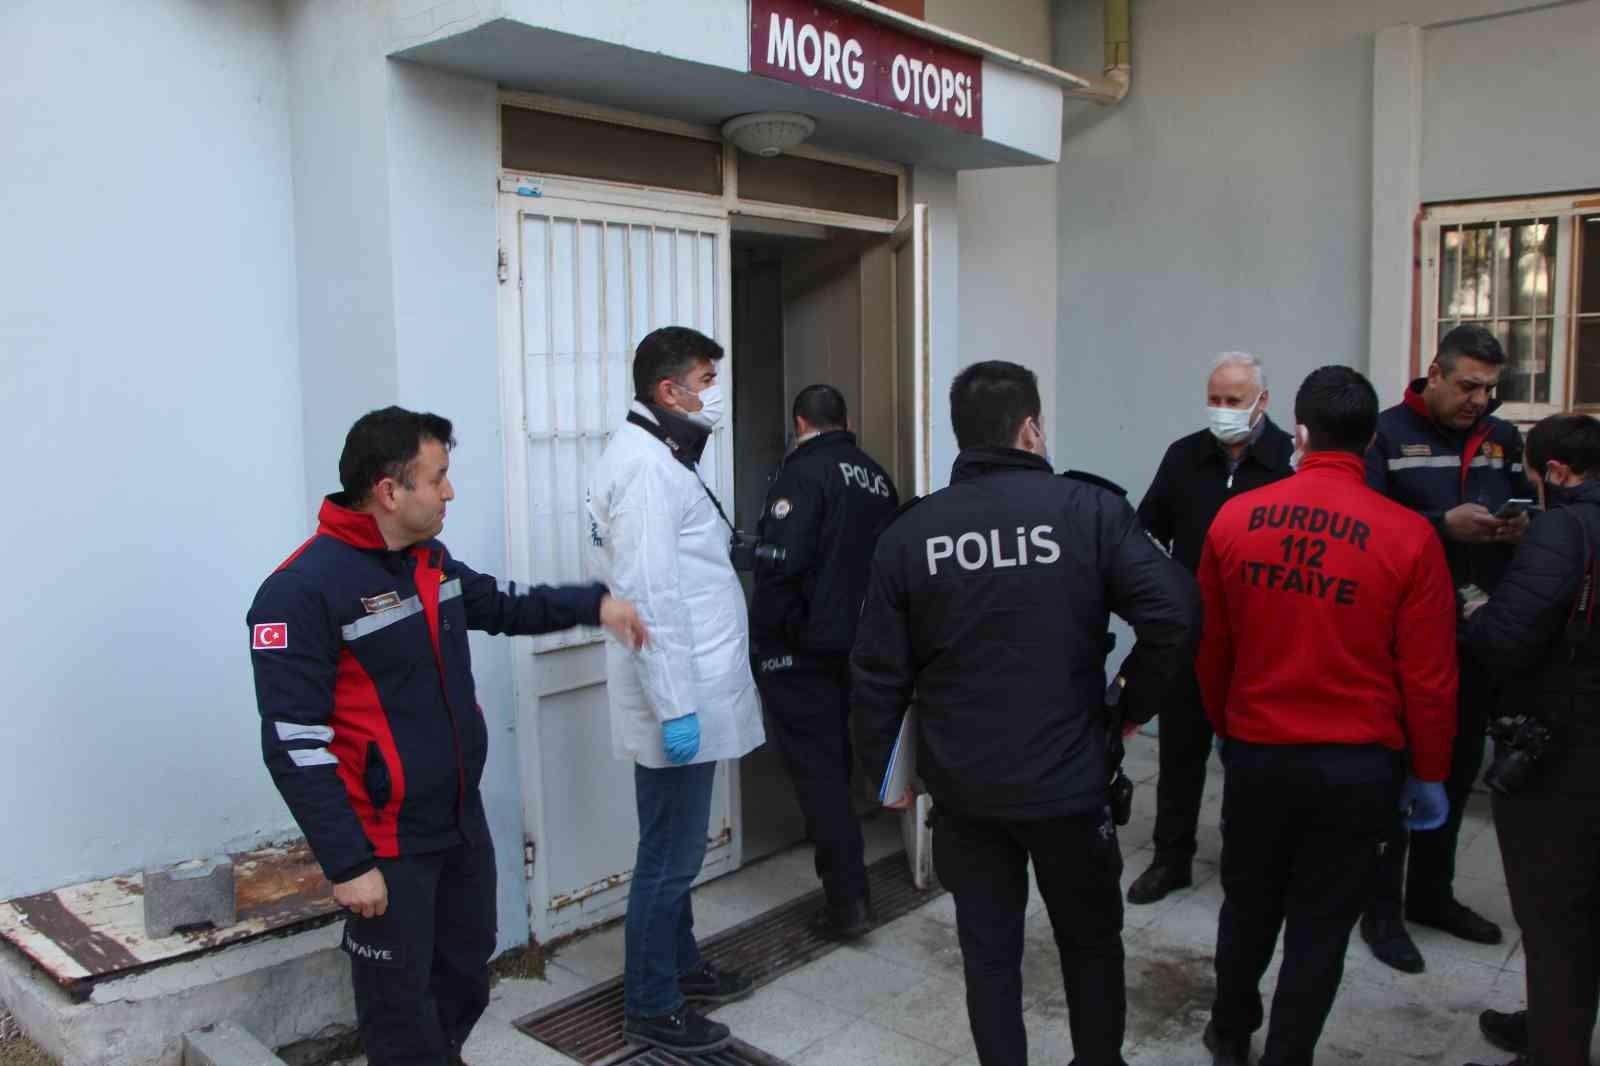 10 gün önce geldiği kızının evinde sobadan zehirlenen yaşlı çifti ölüm ayırdı #burdur